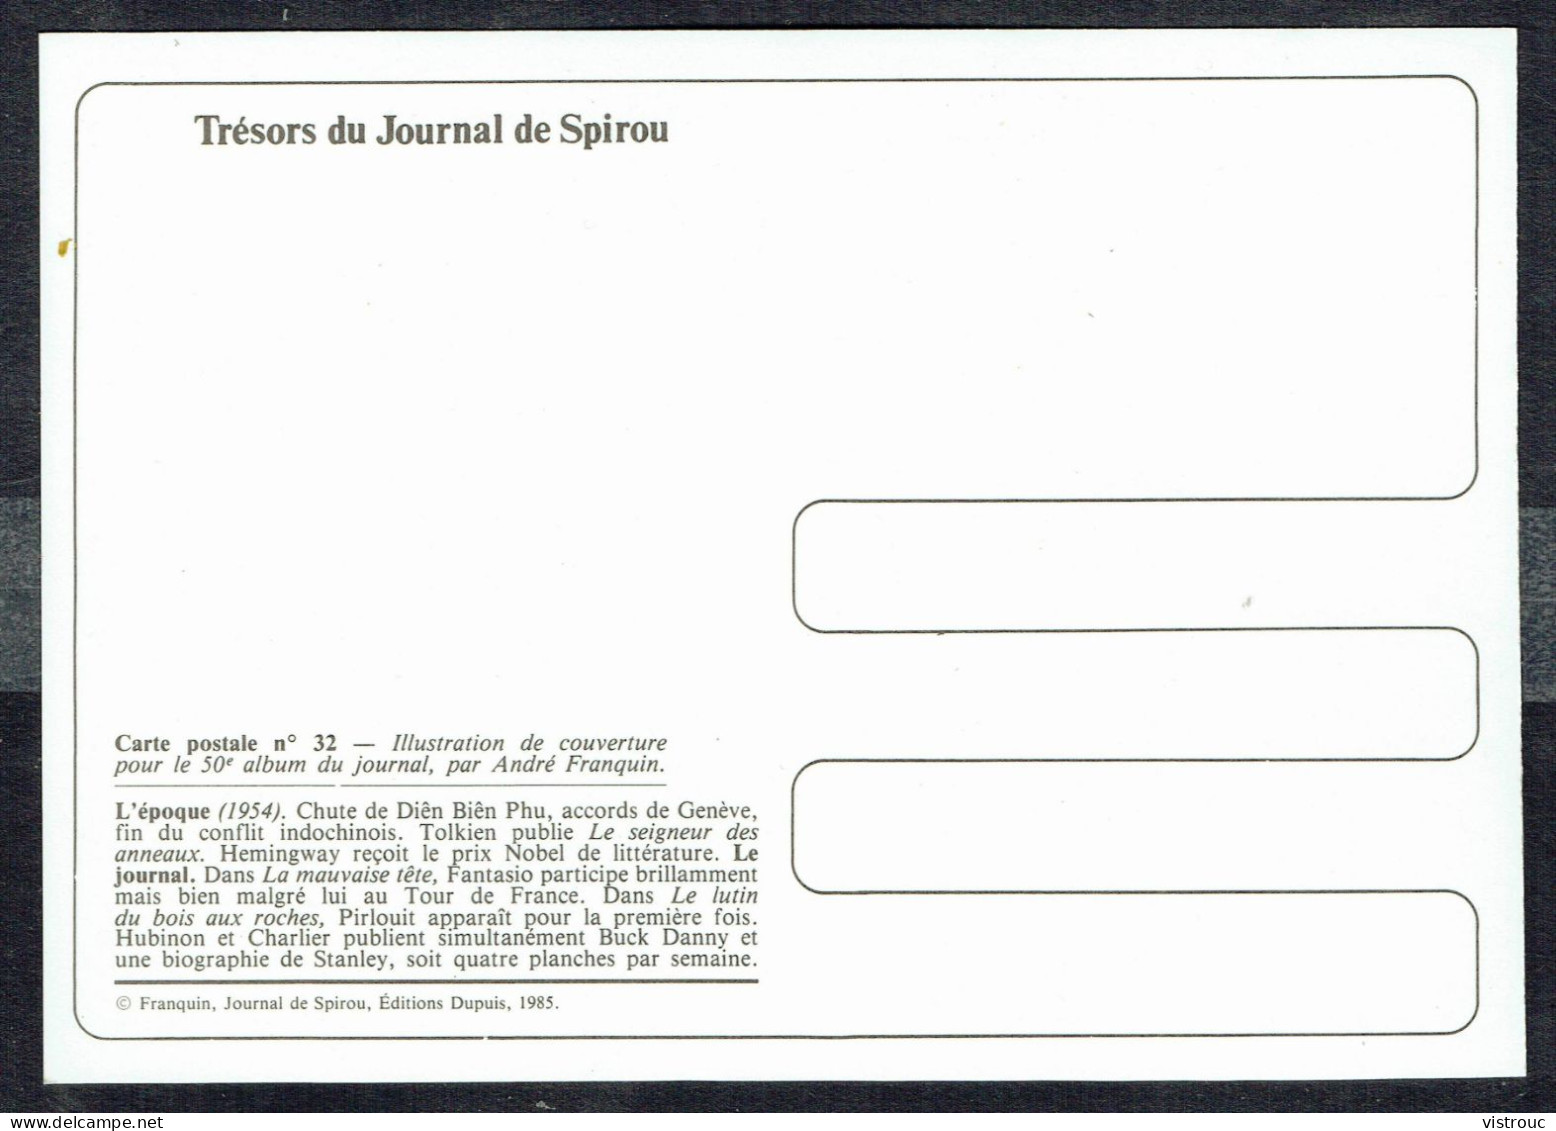 SPIROU - CP N° 32 : Illustration Couverture Album N° 50 De FRANQUIN - Non Circulé - Not Circulated - Ed. DUPUIS - 1985. - Bandes Dessinées